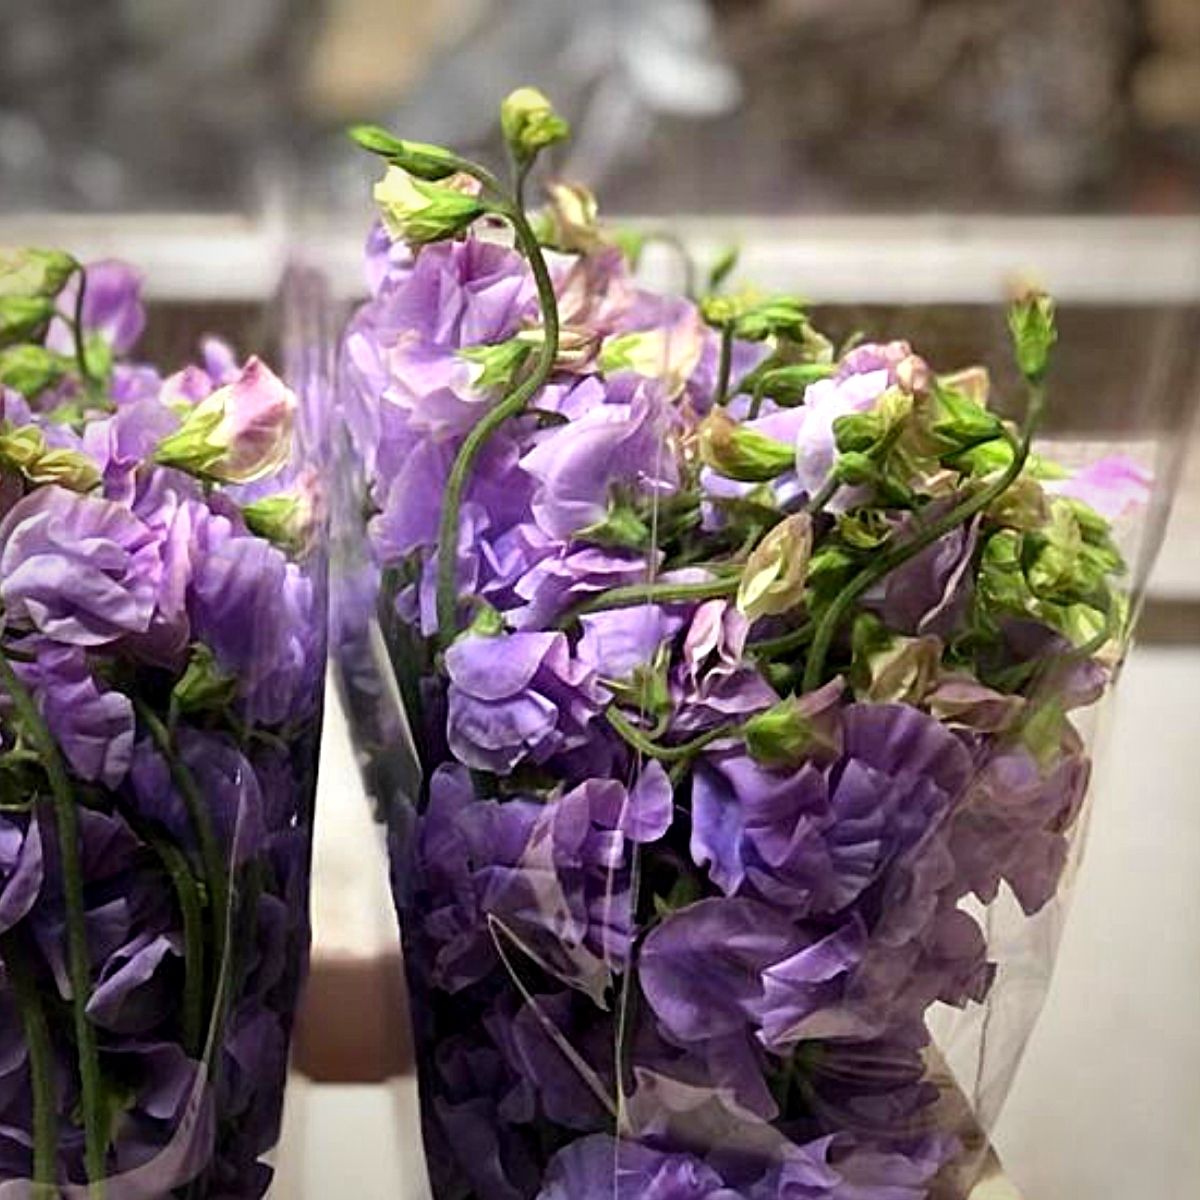 Japanese Flowers - Peter van Delft Weekly #51- Lathyrus Lavender